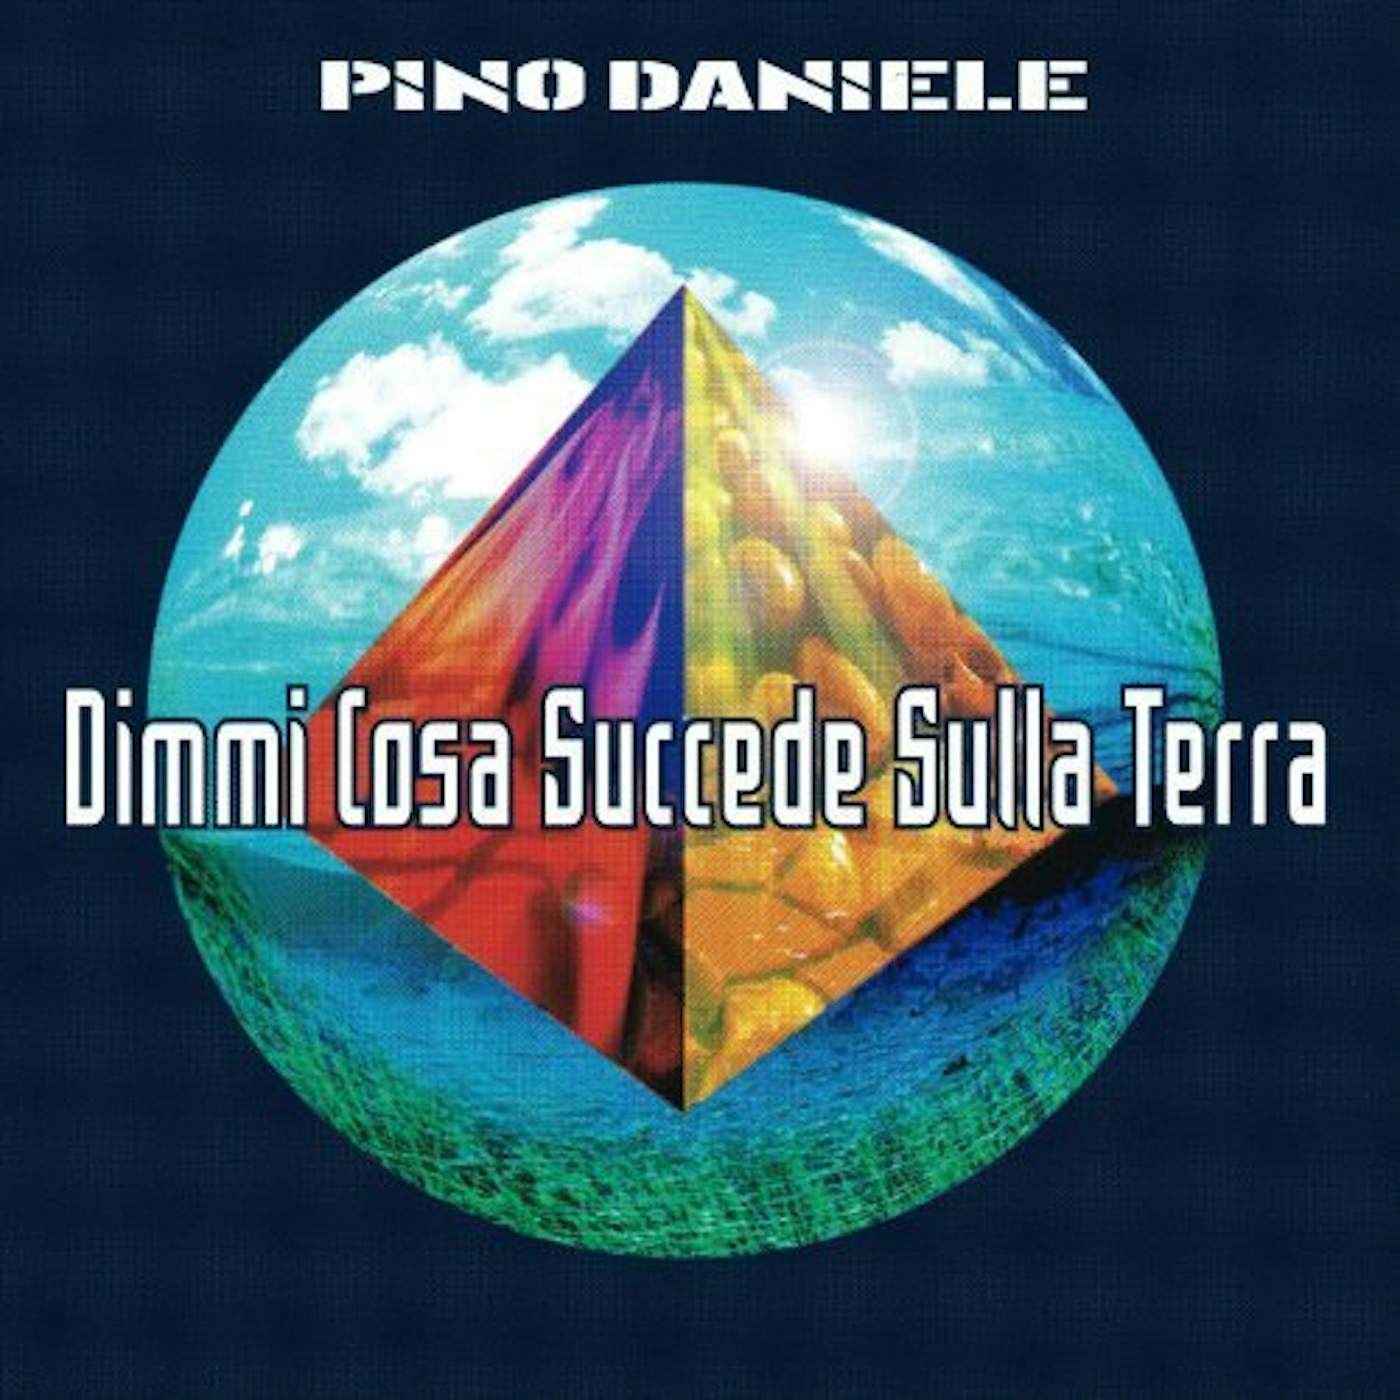 Pino Daniele Dimmi Cosa Succede Sulla Terra Vinyl Record